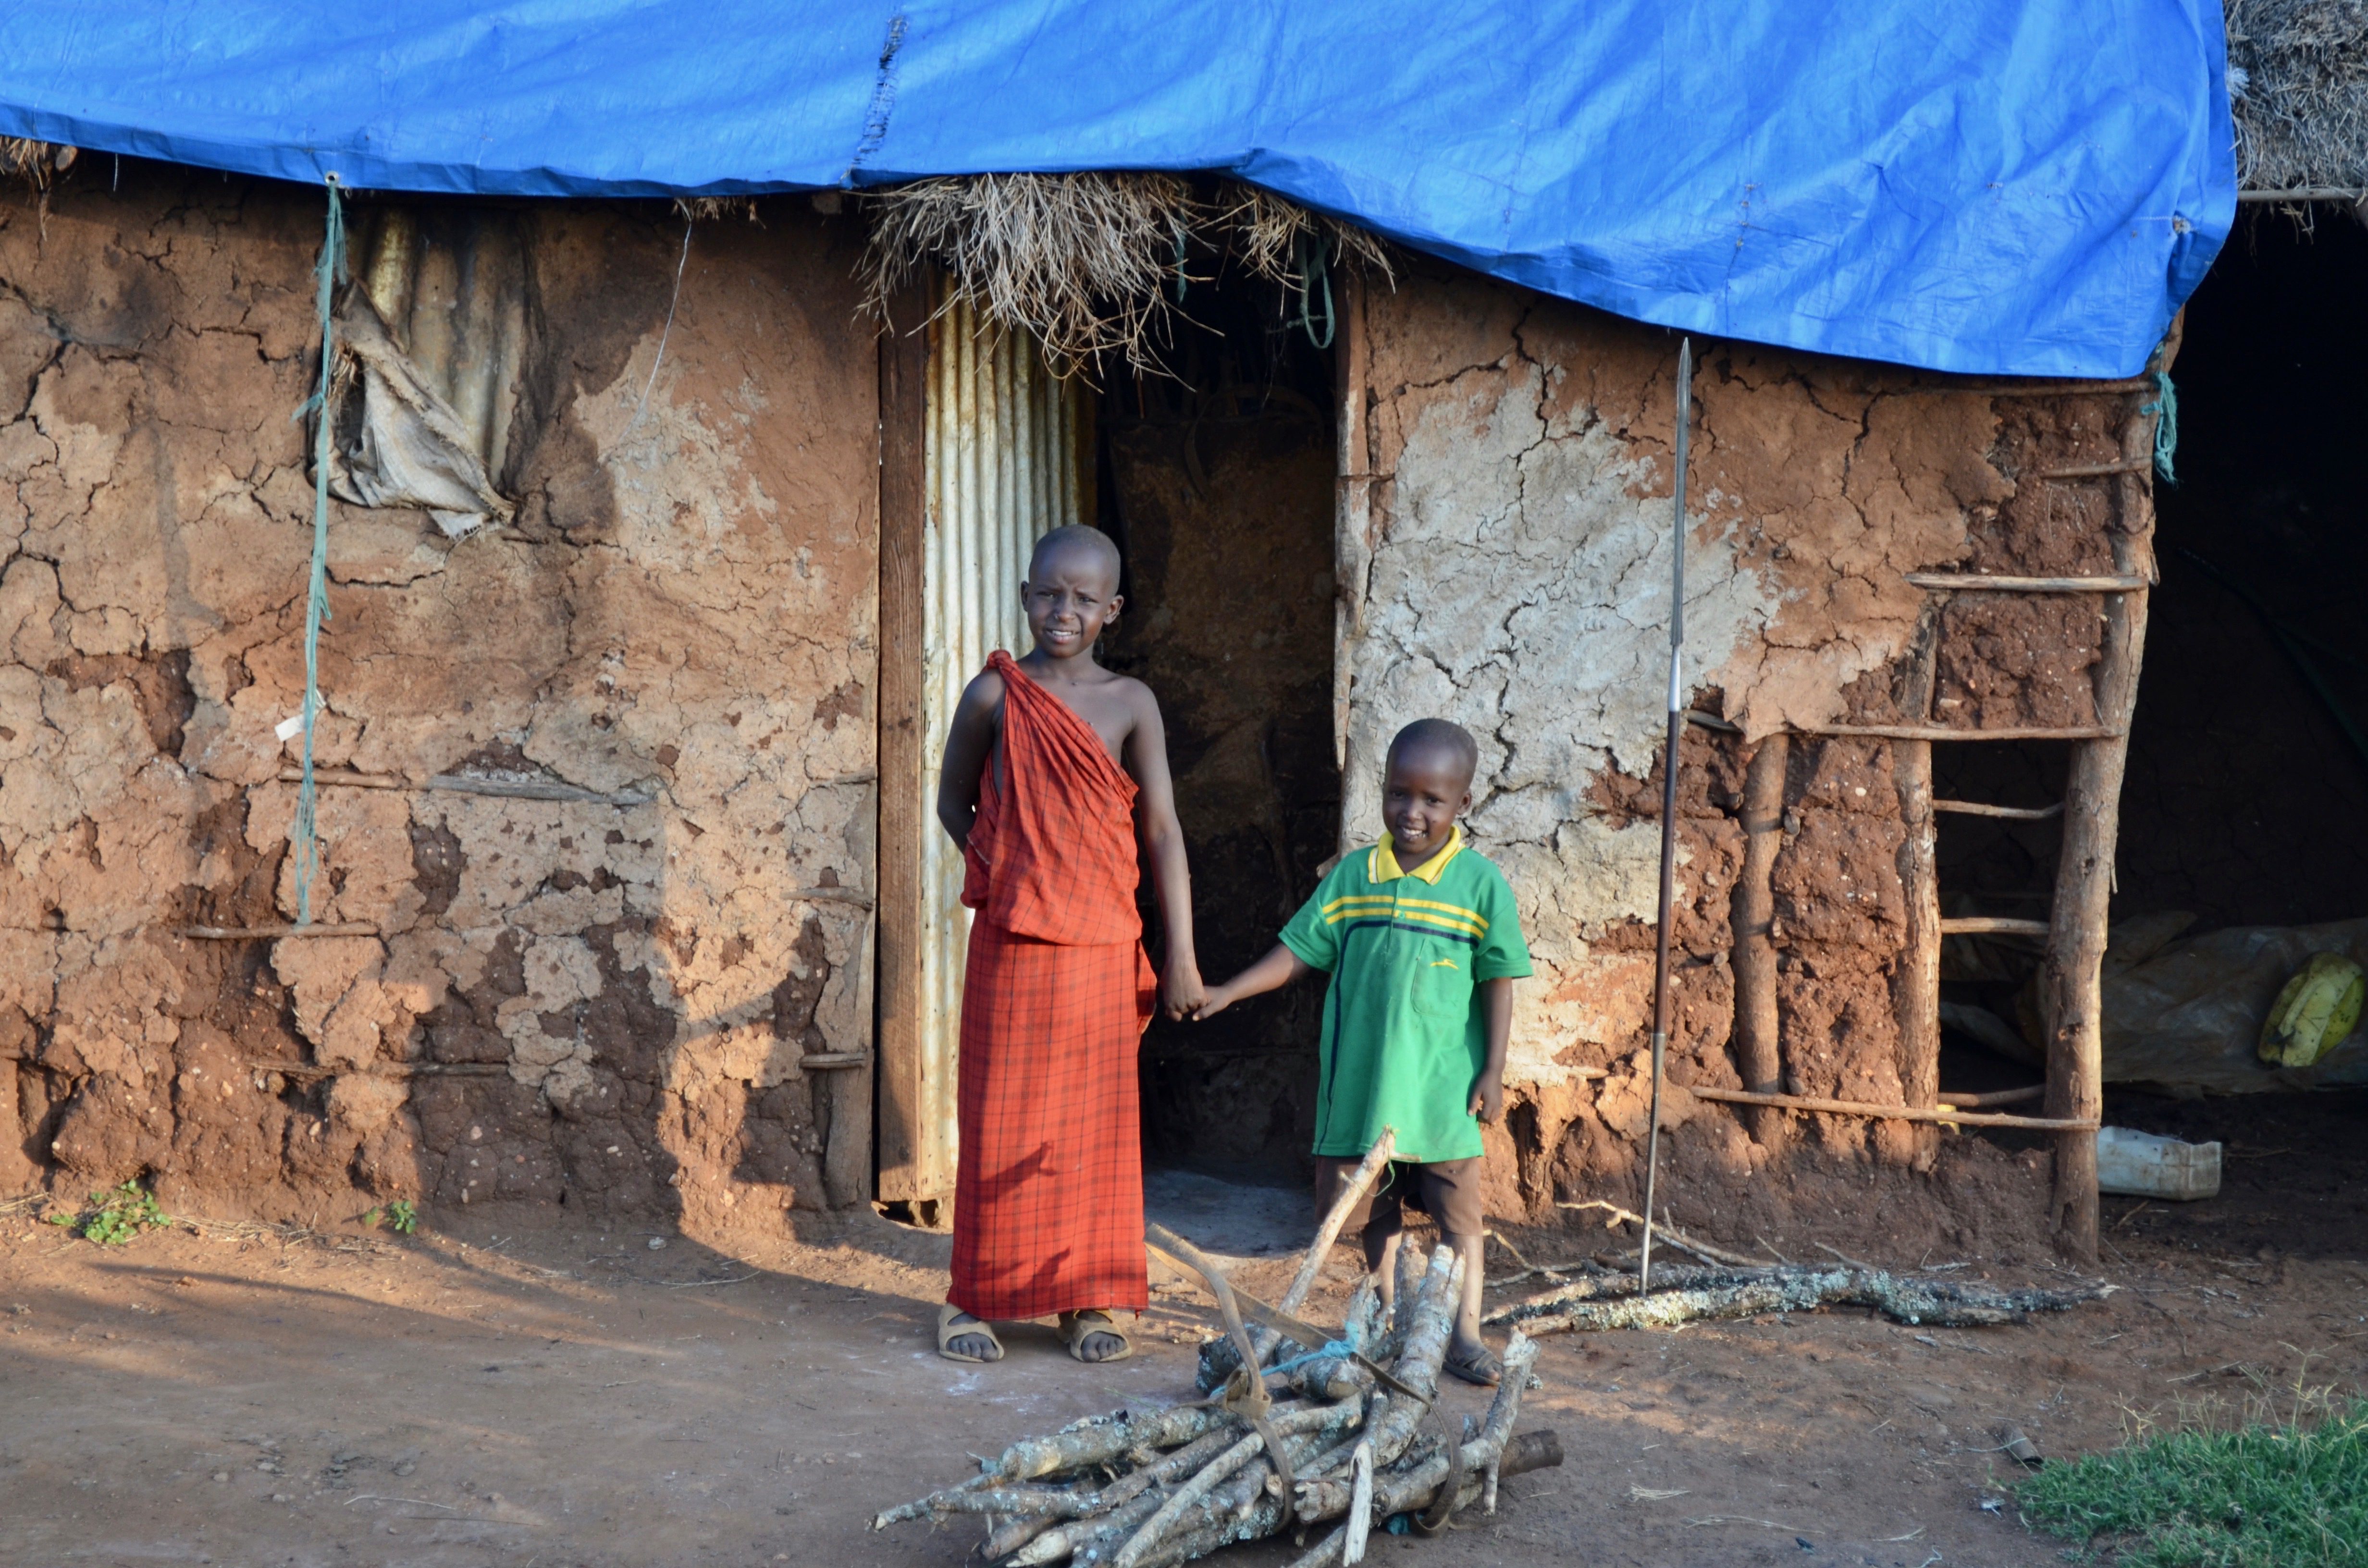 Poverty stricken African village